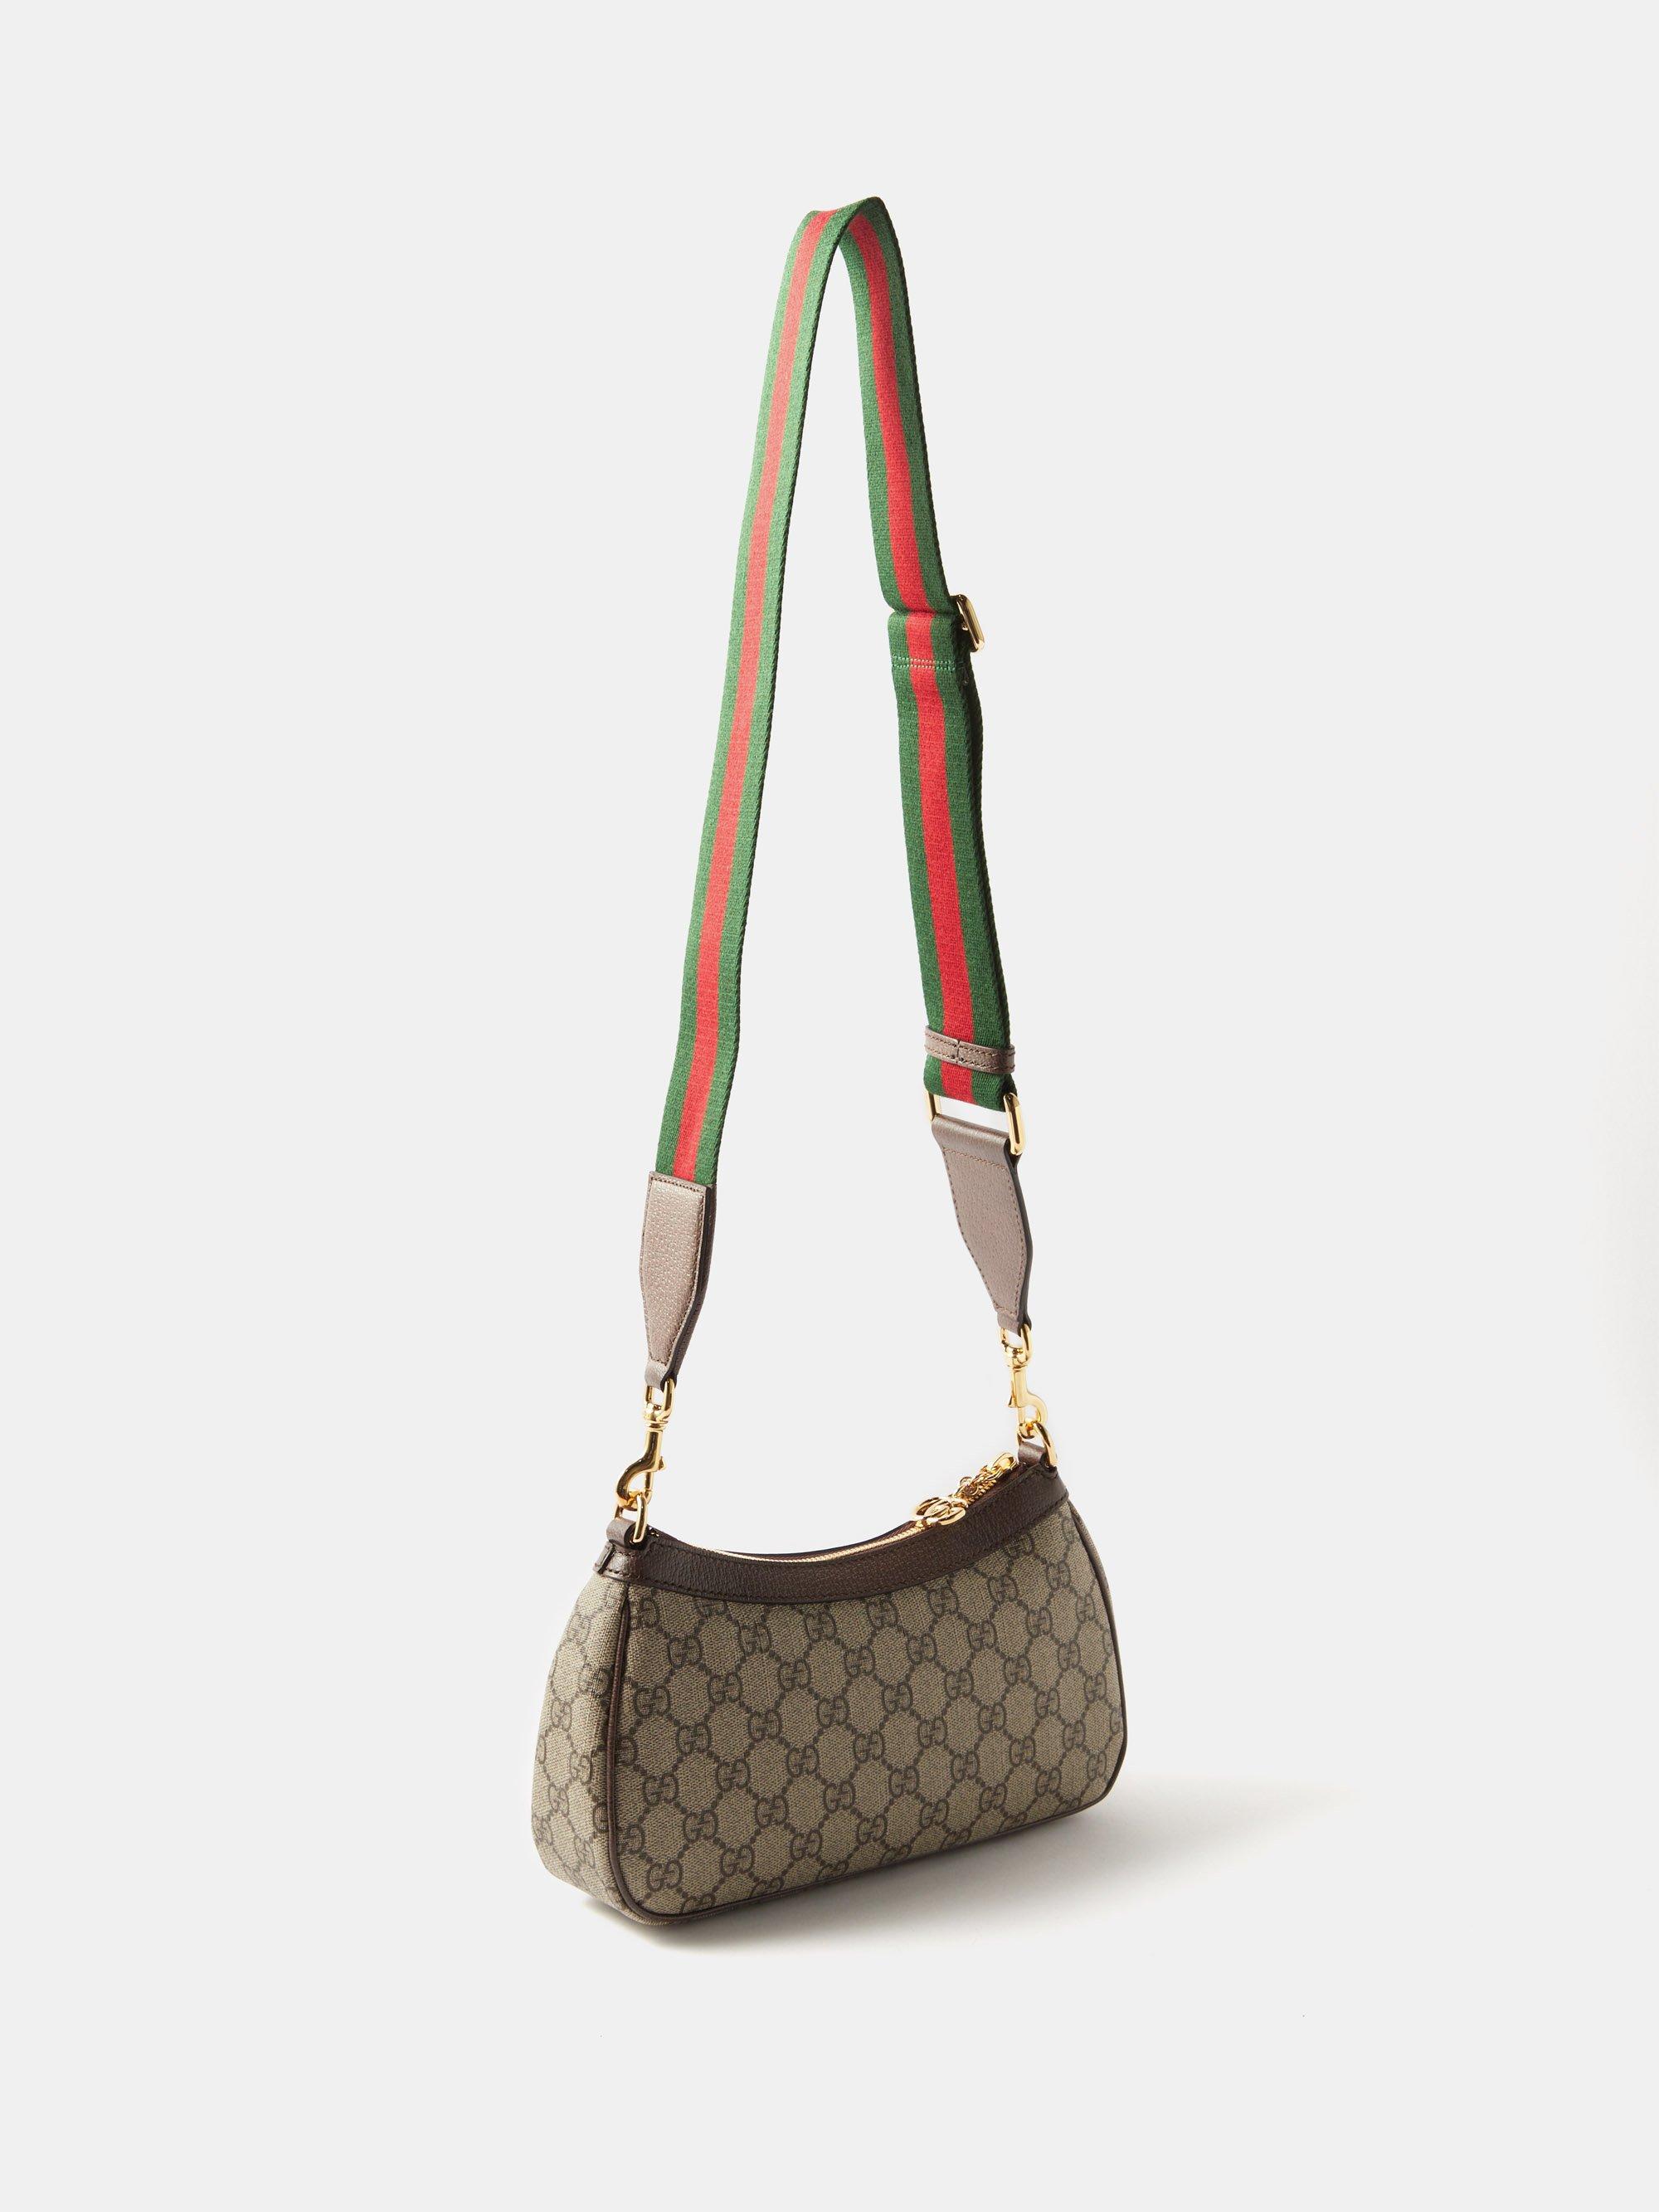 Gucci Ophidia Small Gg Supreme Crossbody Bag In Brown Multi